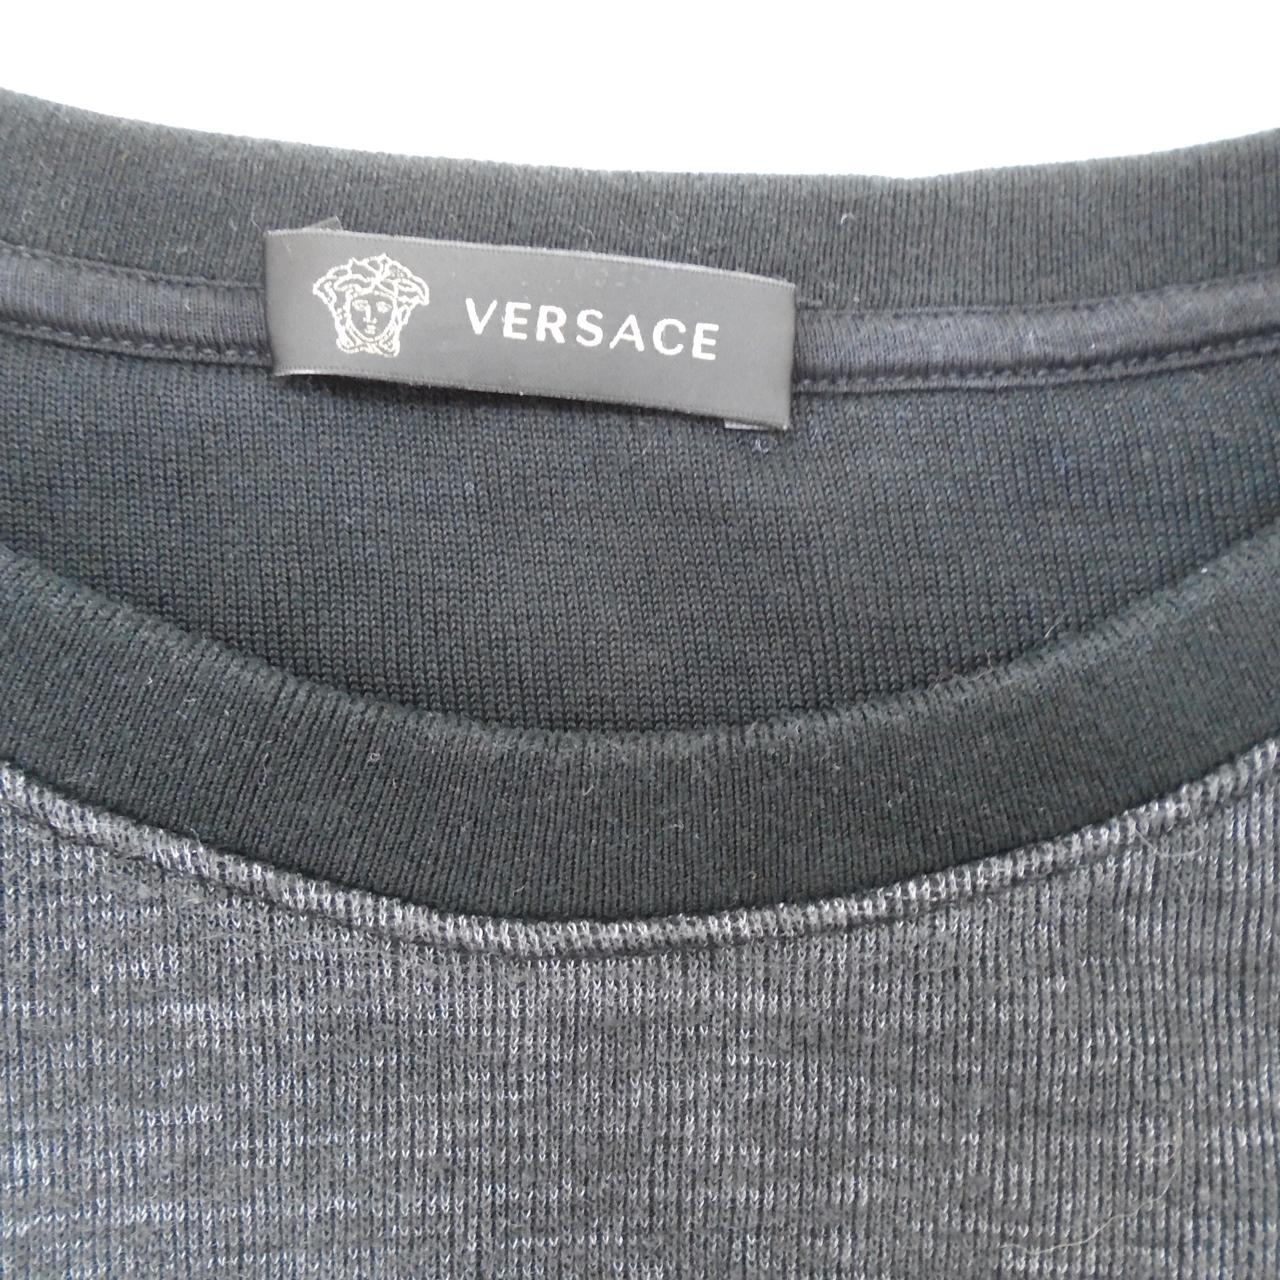 Jersey de mujer Versace Jeans. Gris. S. Usado. Bien